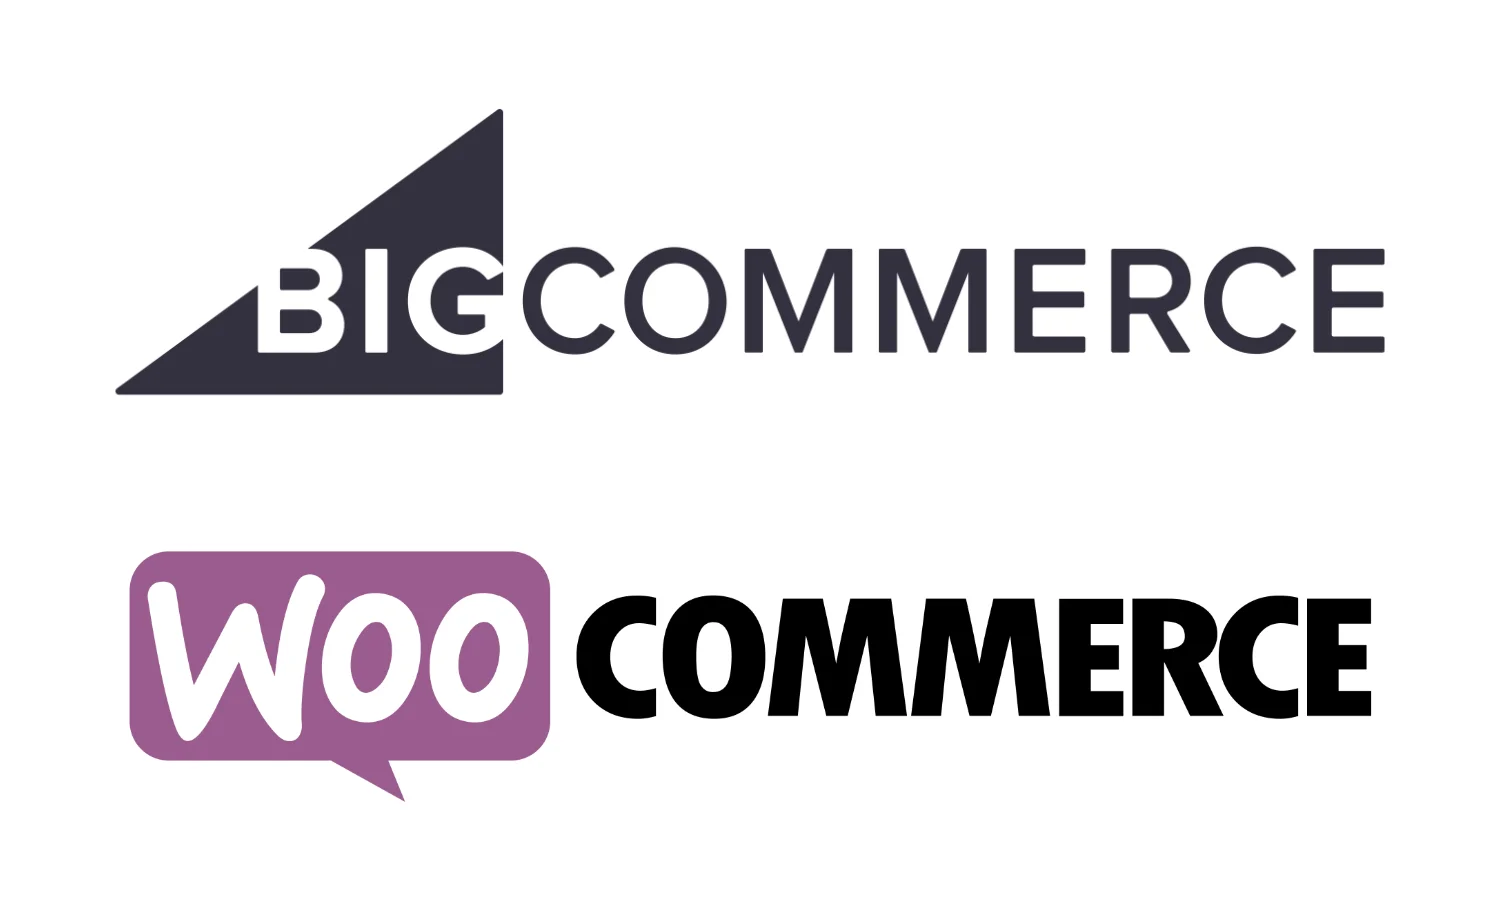 bigcommerce and woocommerce logo